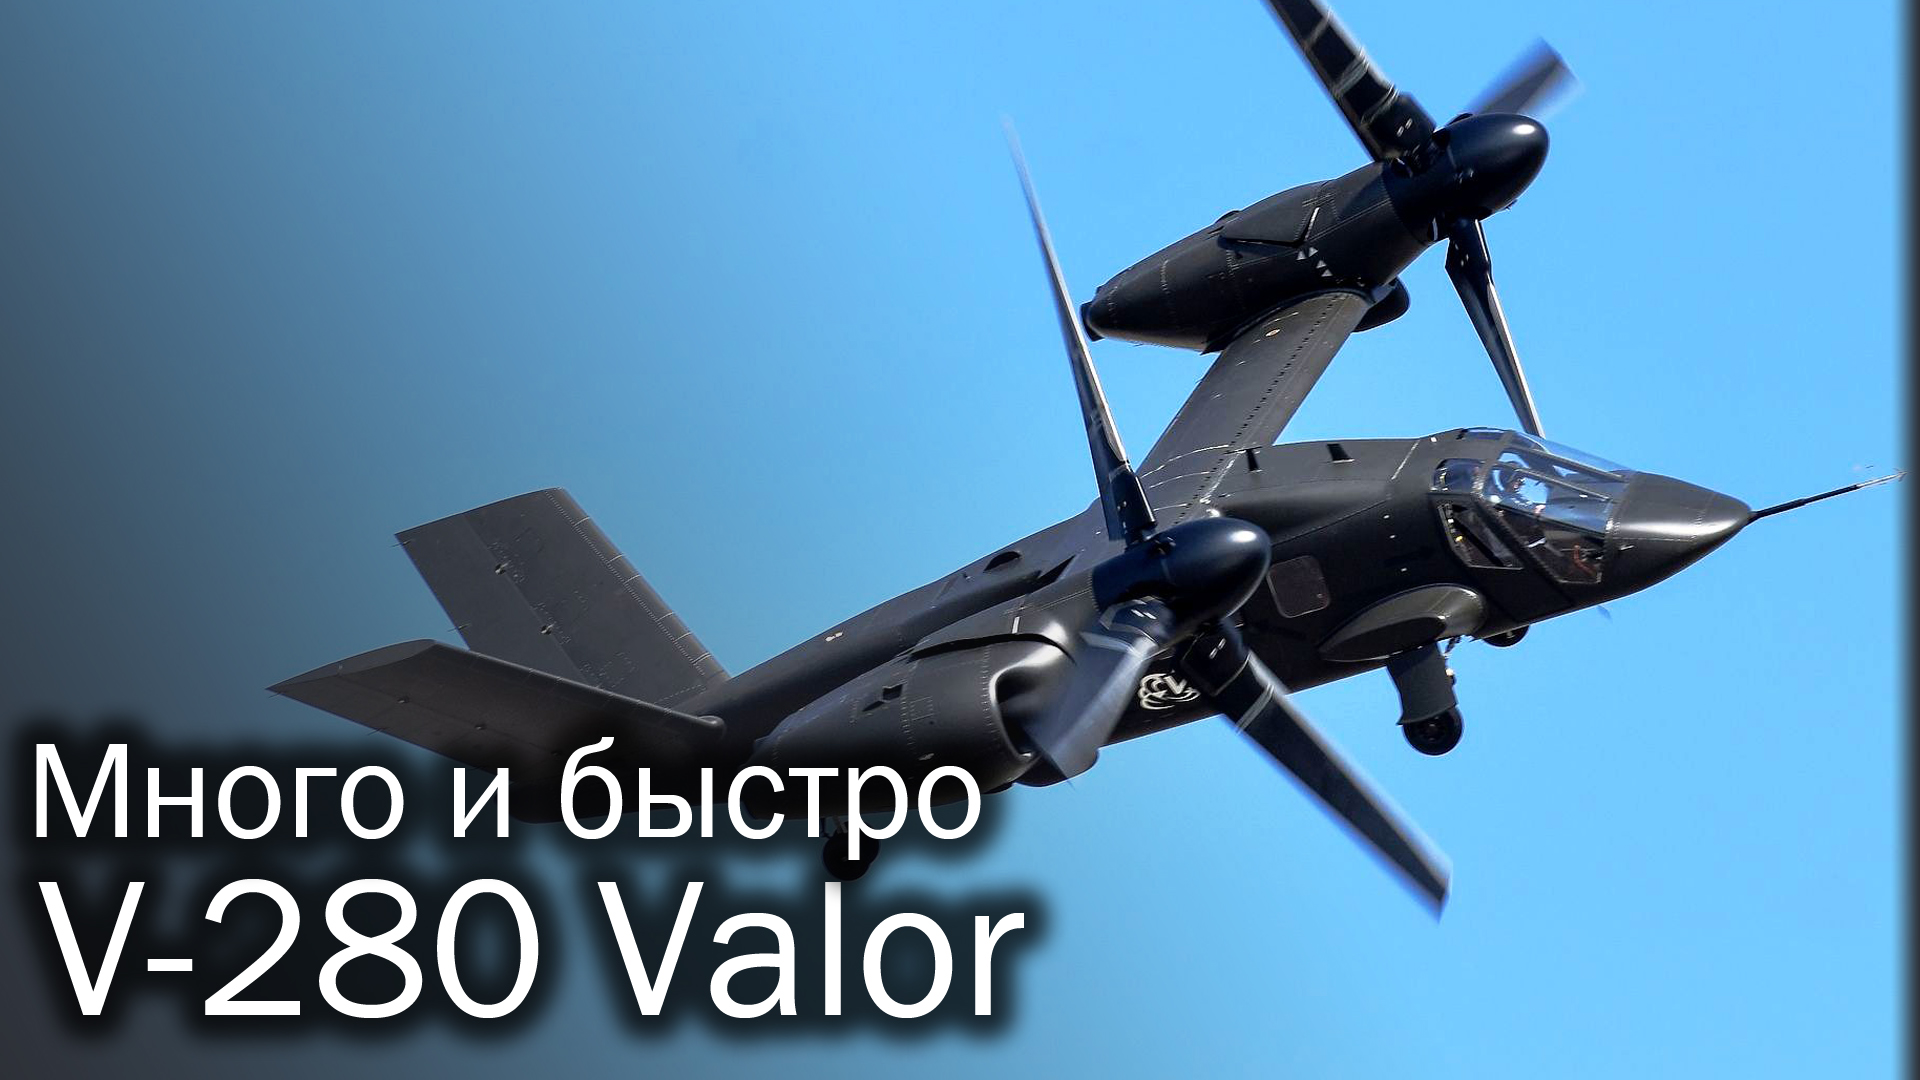 V-280 Valor - Черный ястреб из будущего